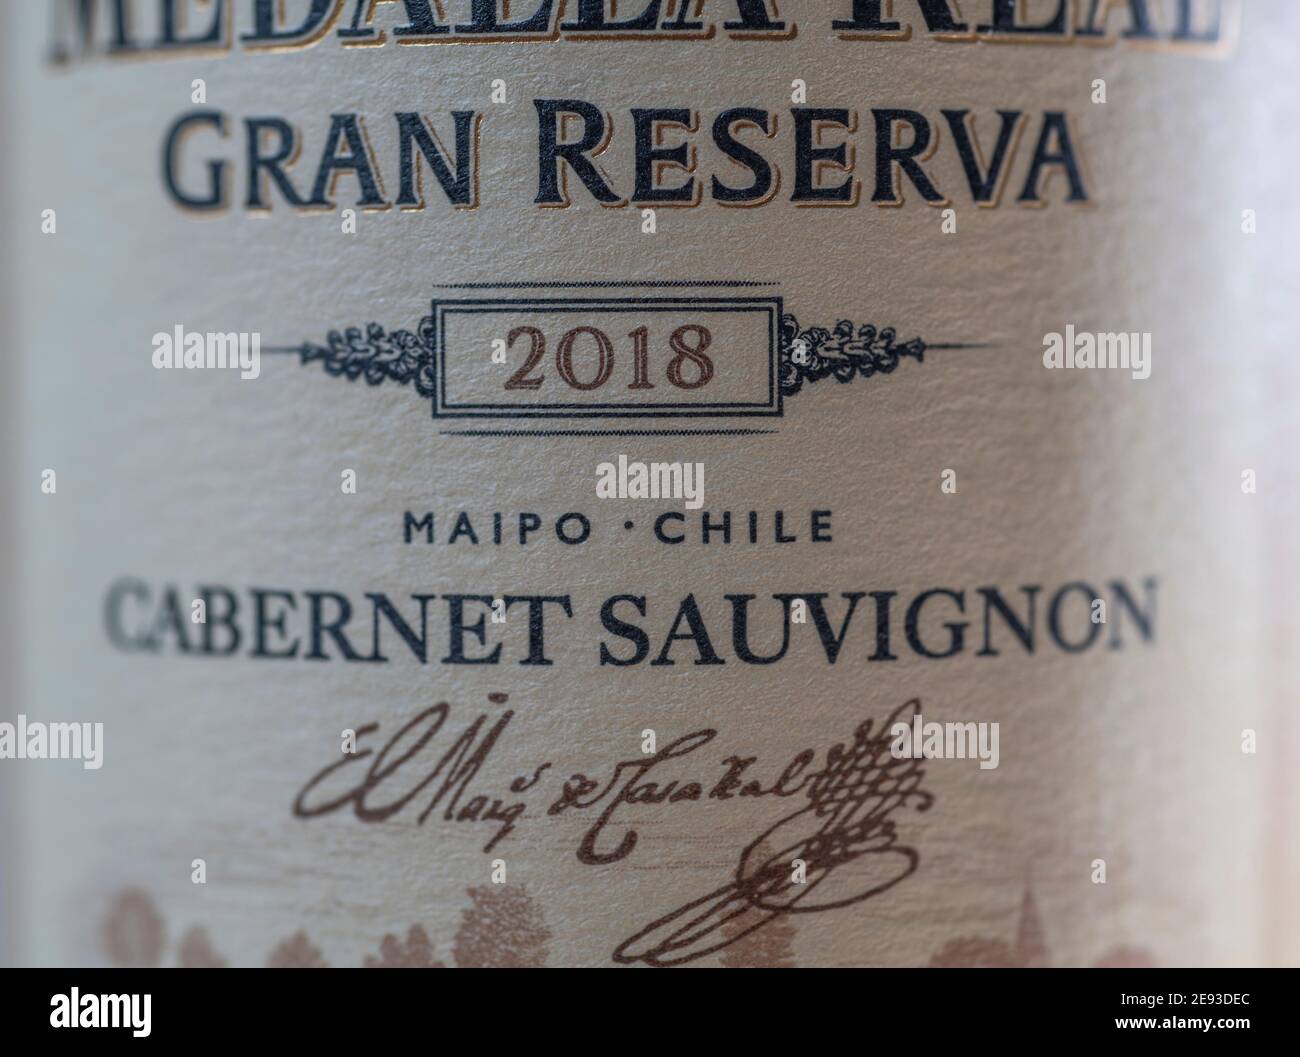 Le Cabernet Sauvignon 2018 chilien est une étiquette de vin en gros plan Banque D'Images